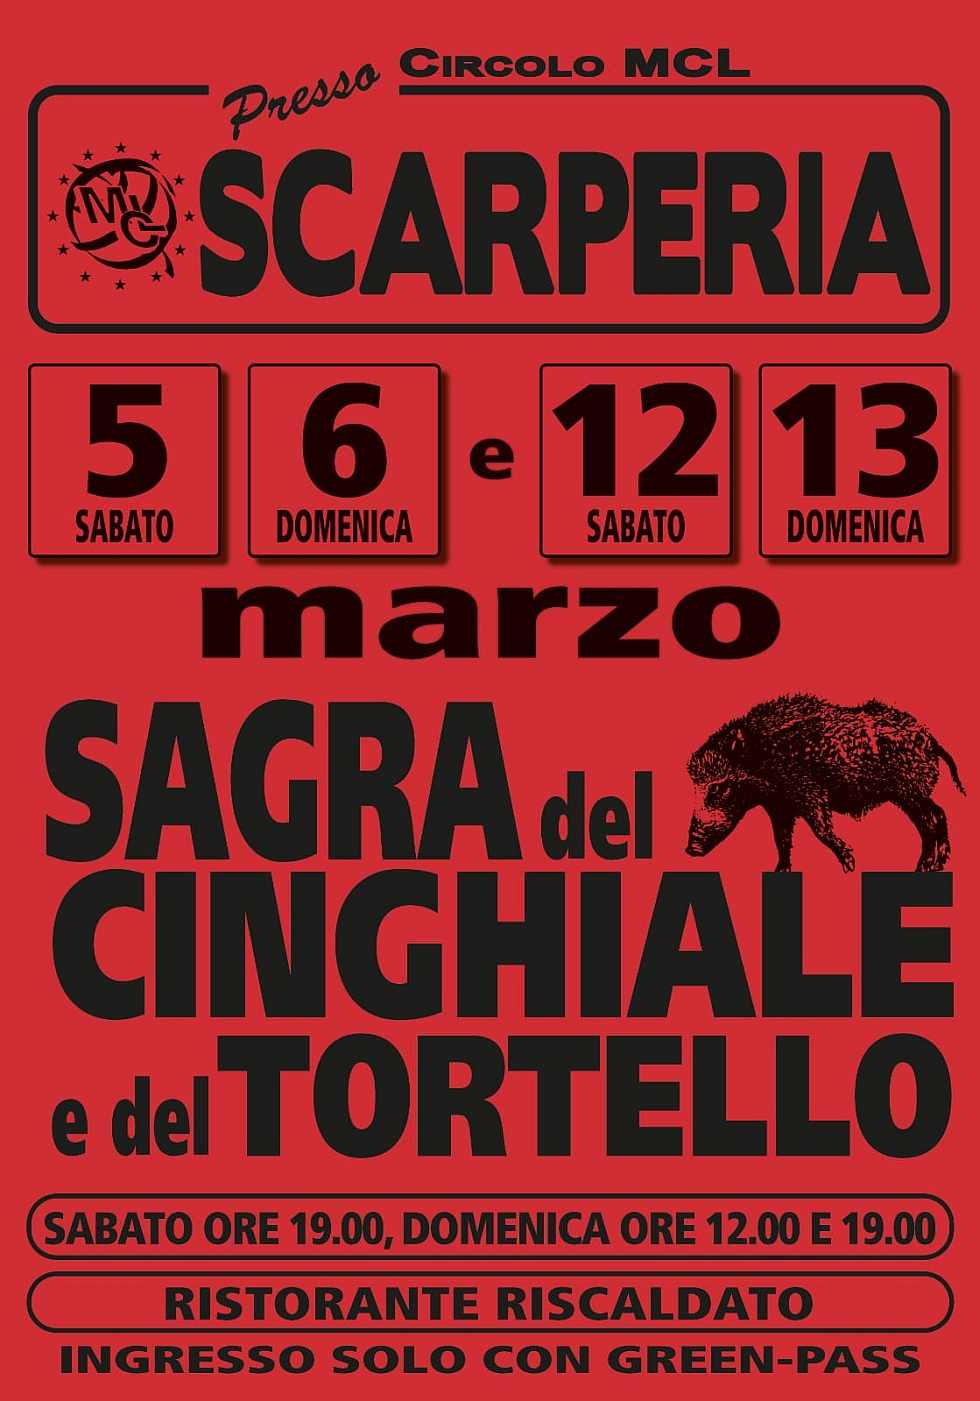 Scarperia (FI)
"Sagra del Cinghiale e del Tortello"
5-6 e 12-13 Marzo 2022